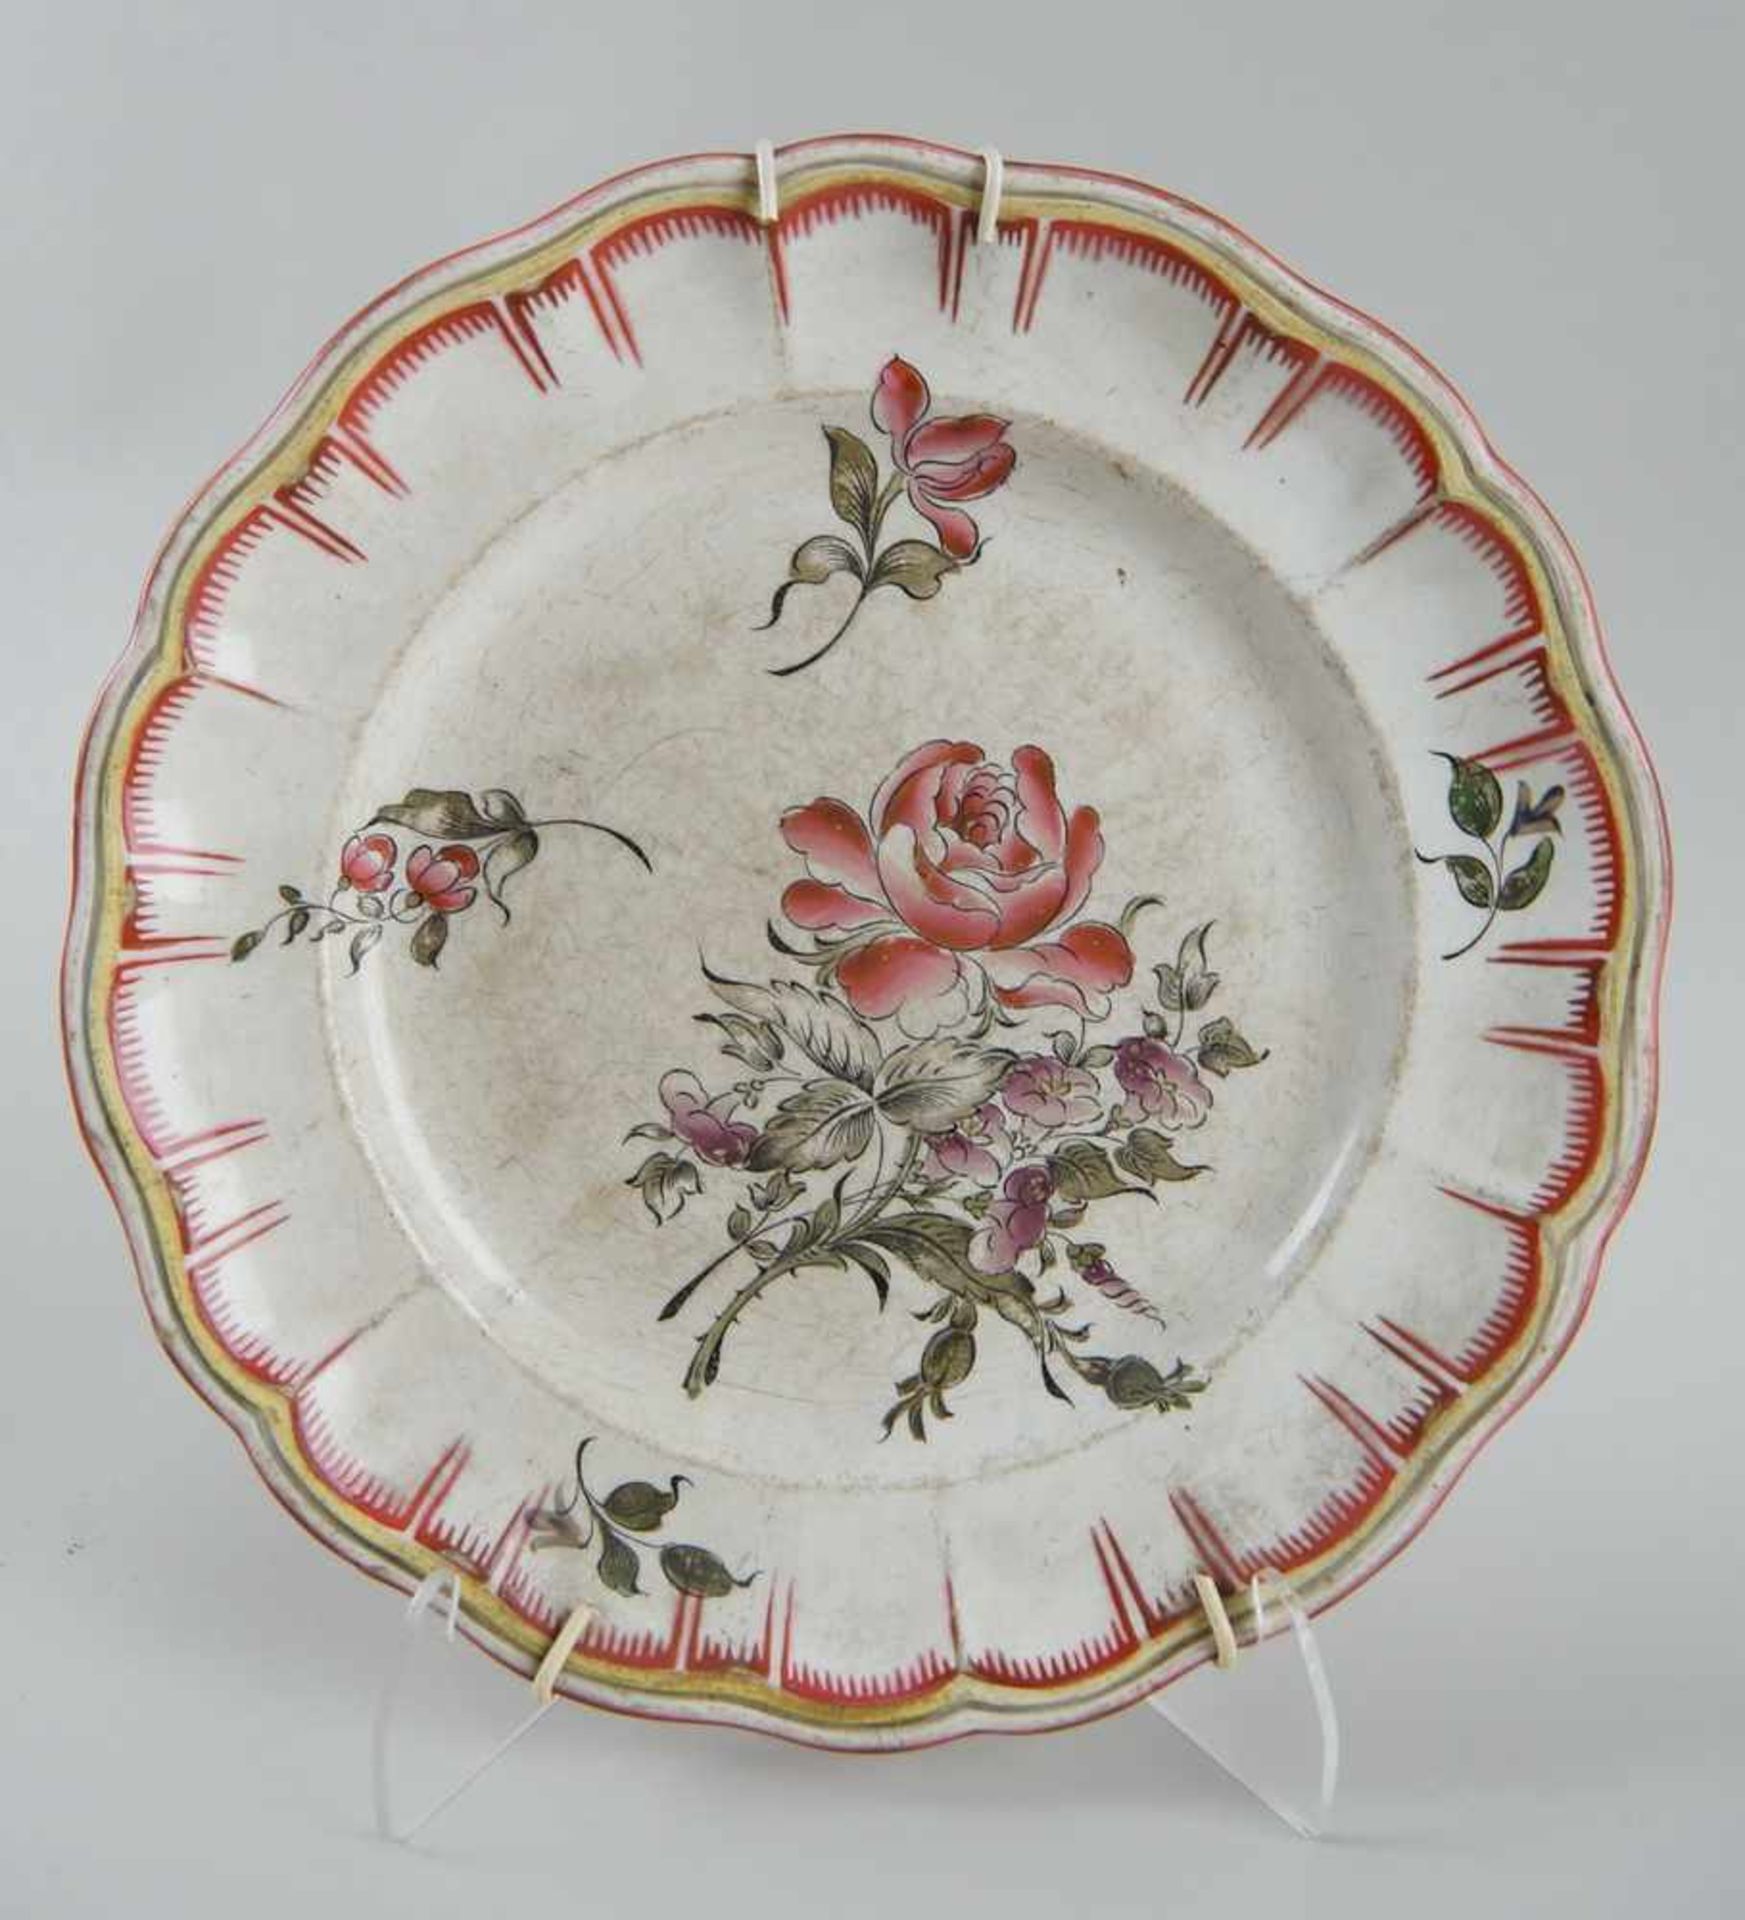 Keramikteller, floral bemalt, Altersspuren, verso gemarktet, Durchmesser 24,5cm - Bild 2 aus 4